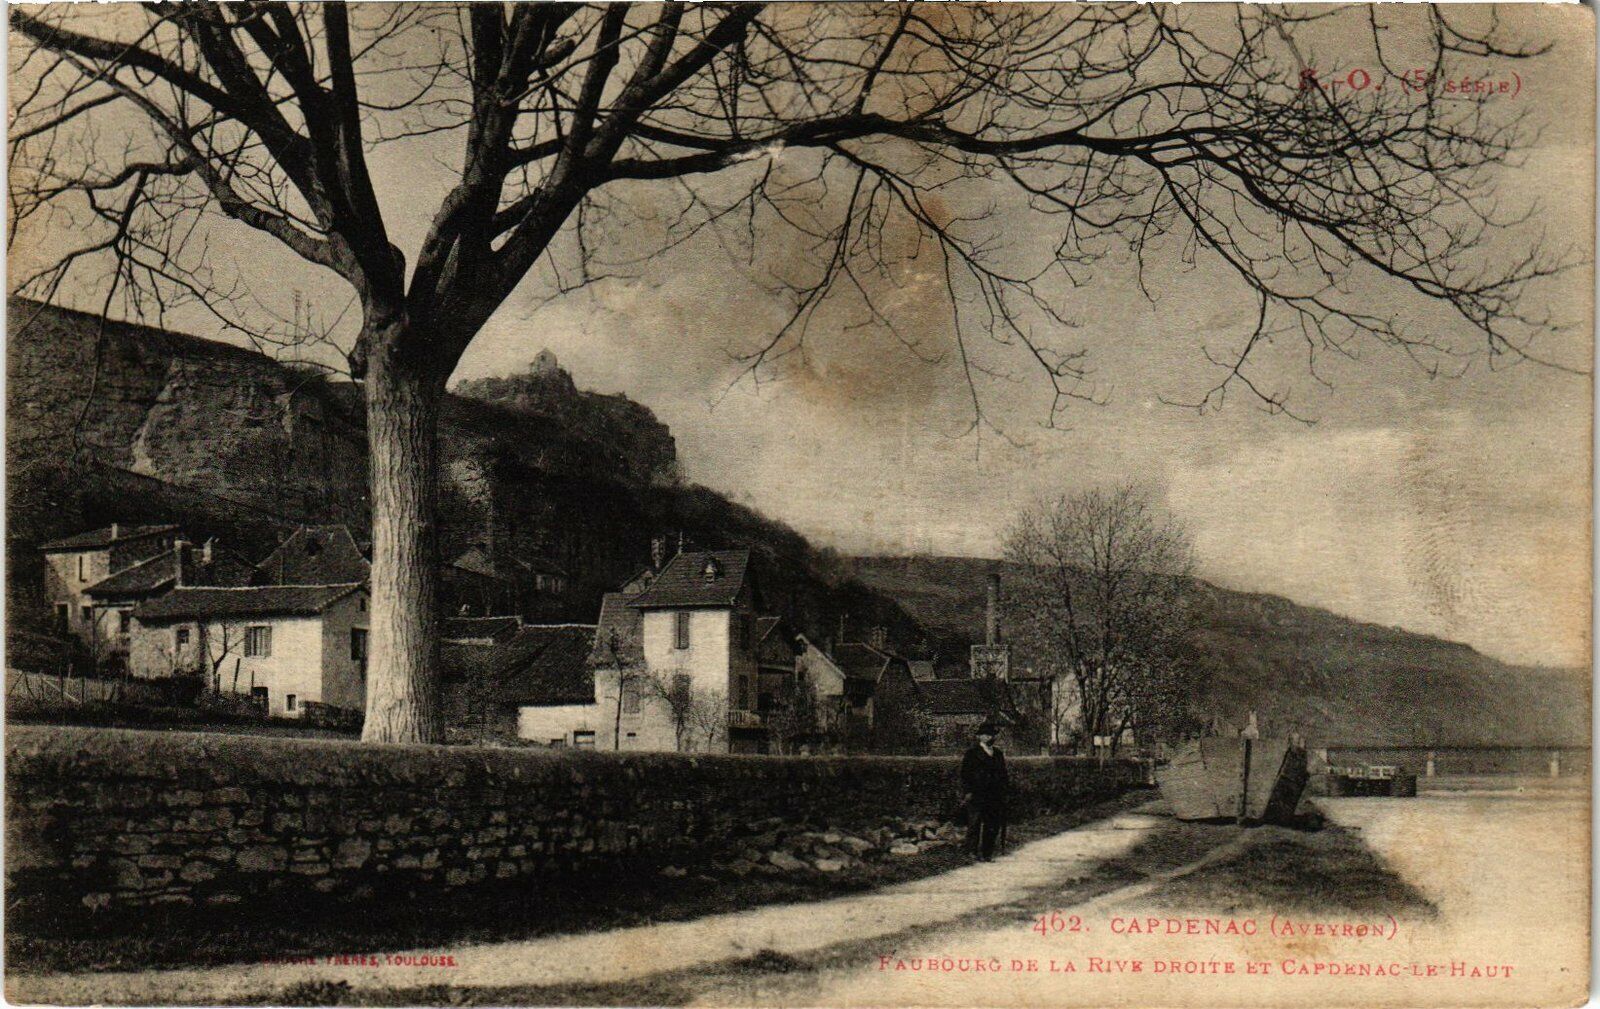 CPA Capdenac - Faubourg de la Rive droit and Capdenac le Haut (113305)